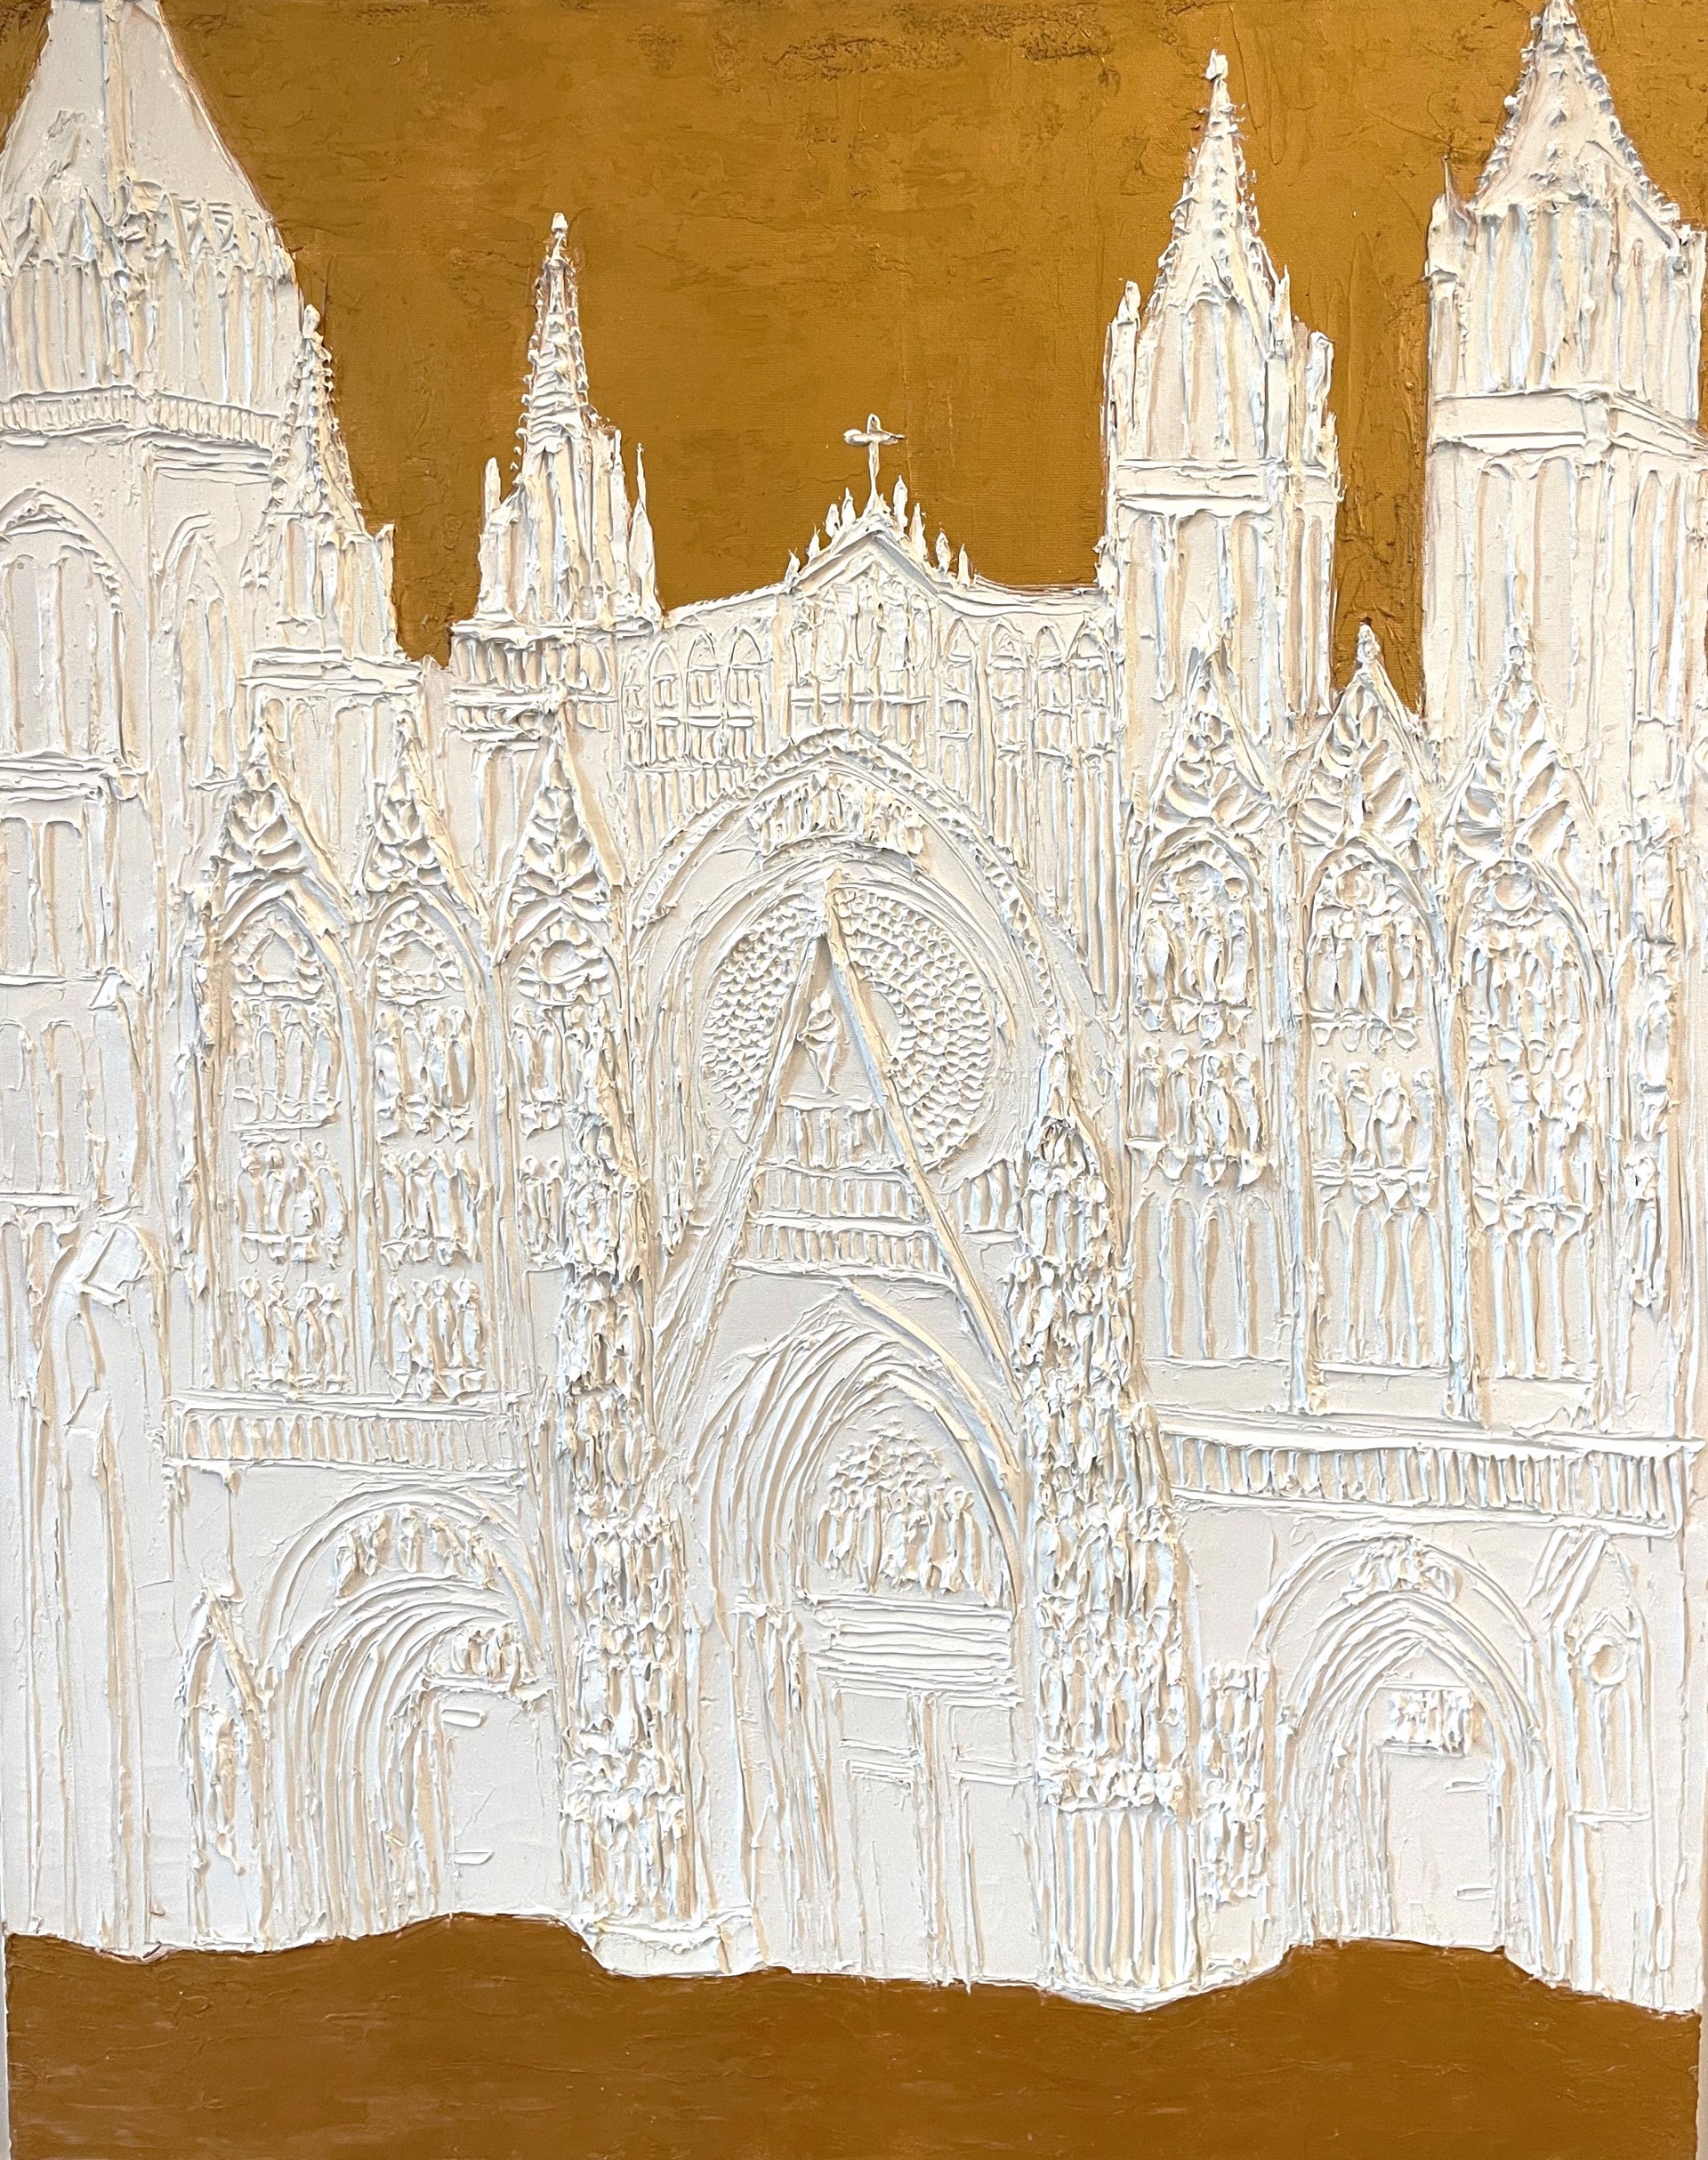 La Cathedrale de Rouen by Brooke Major